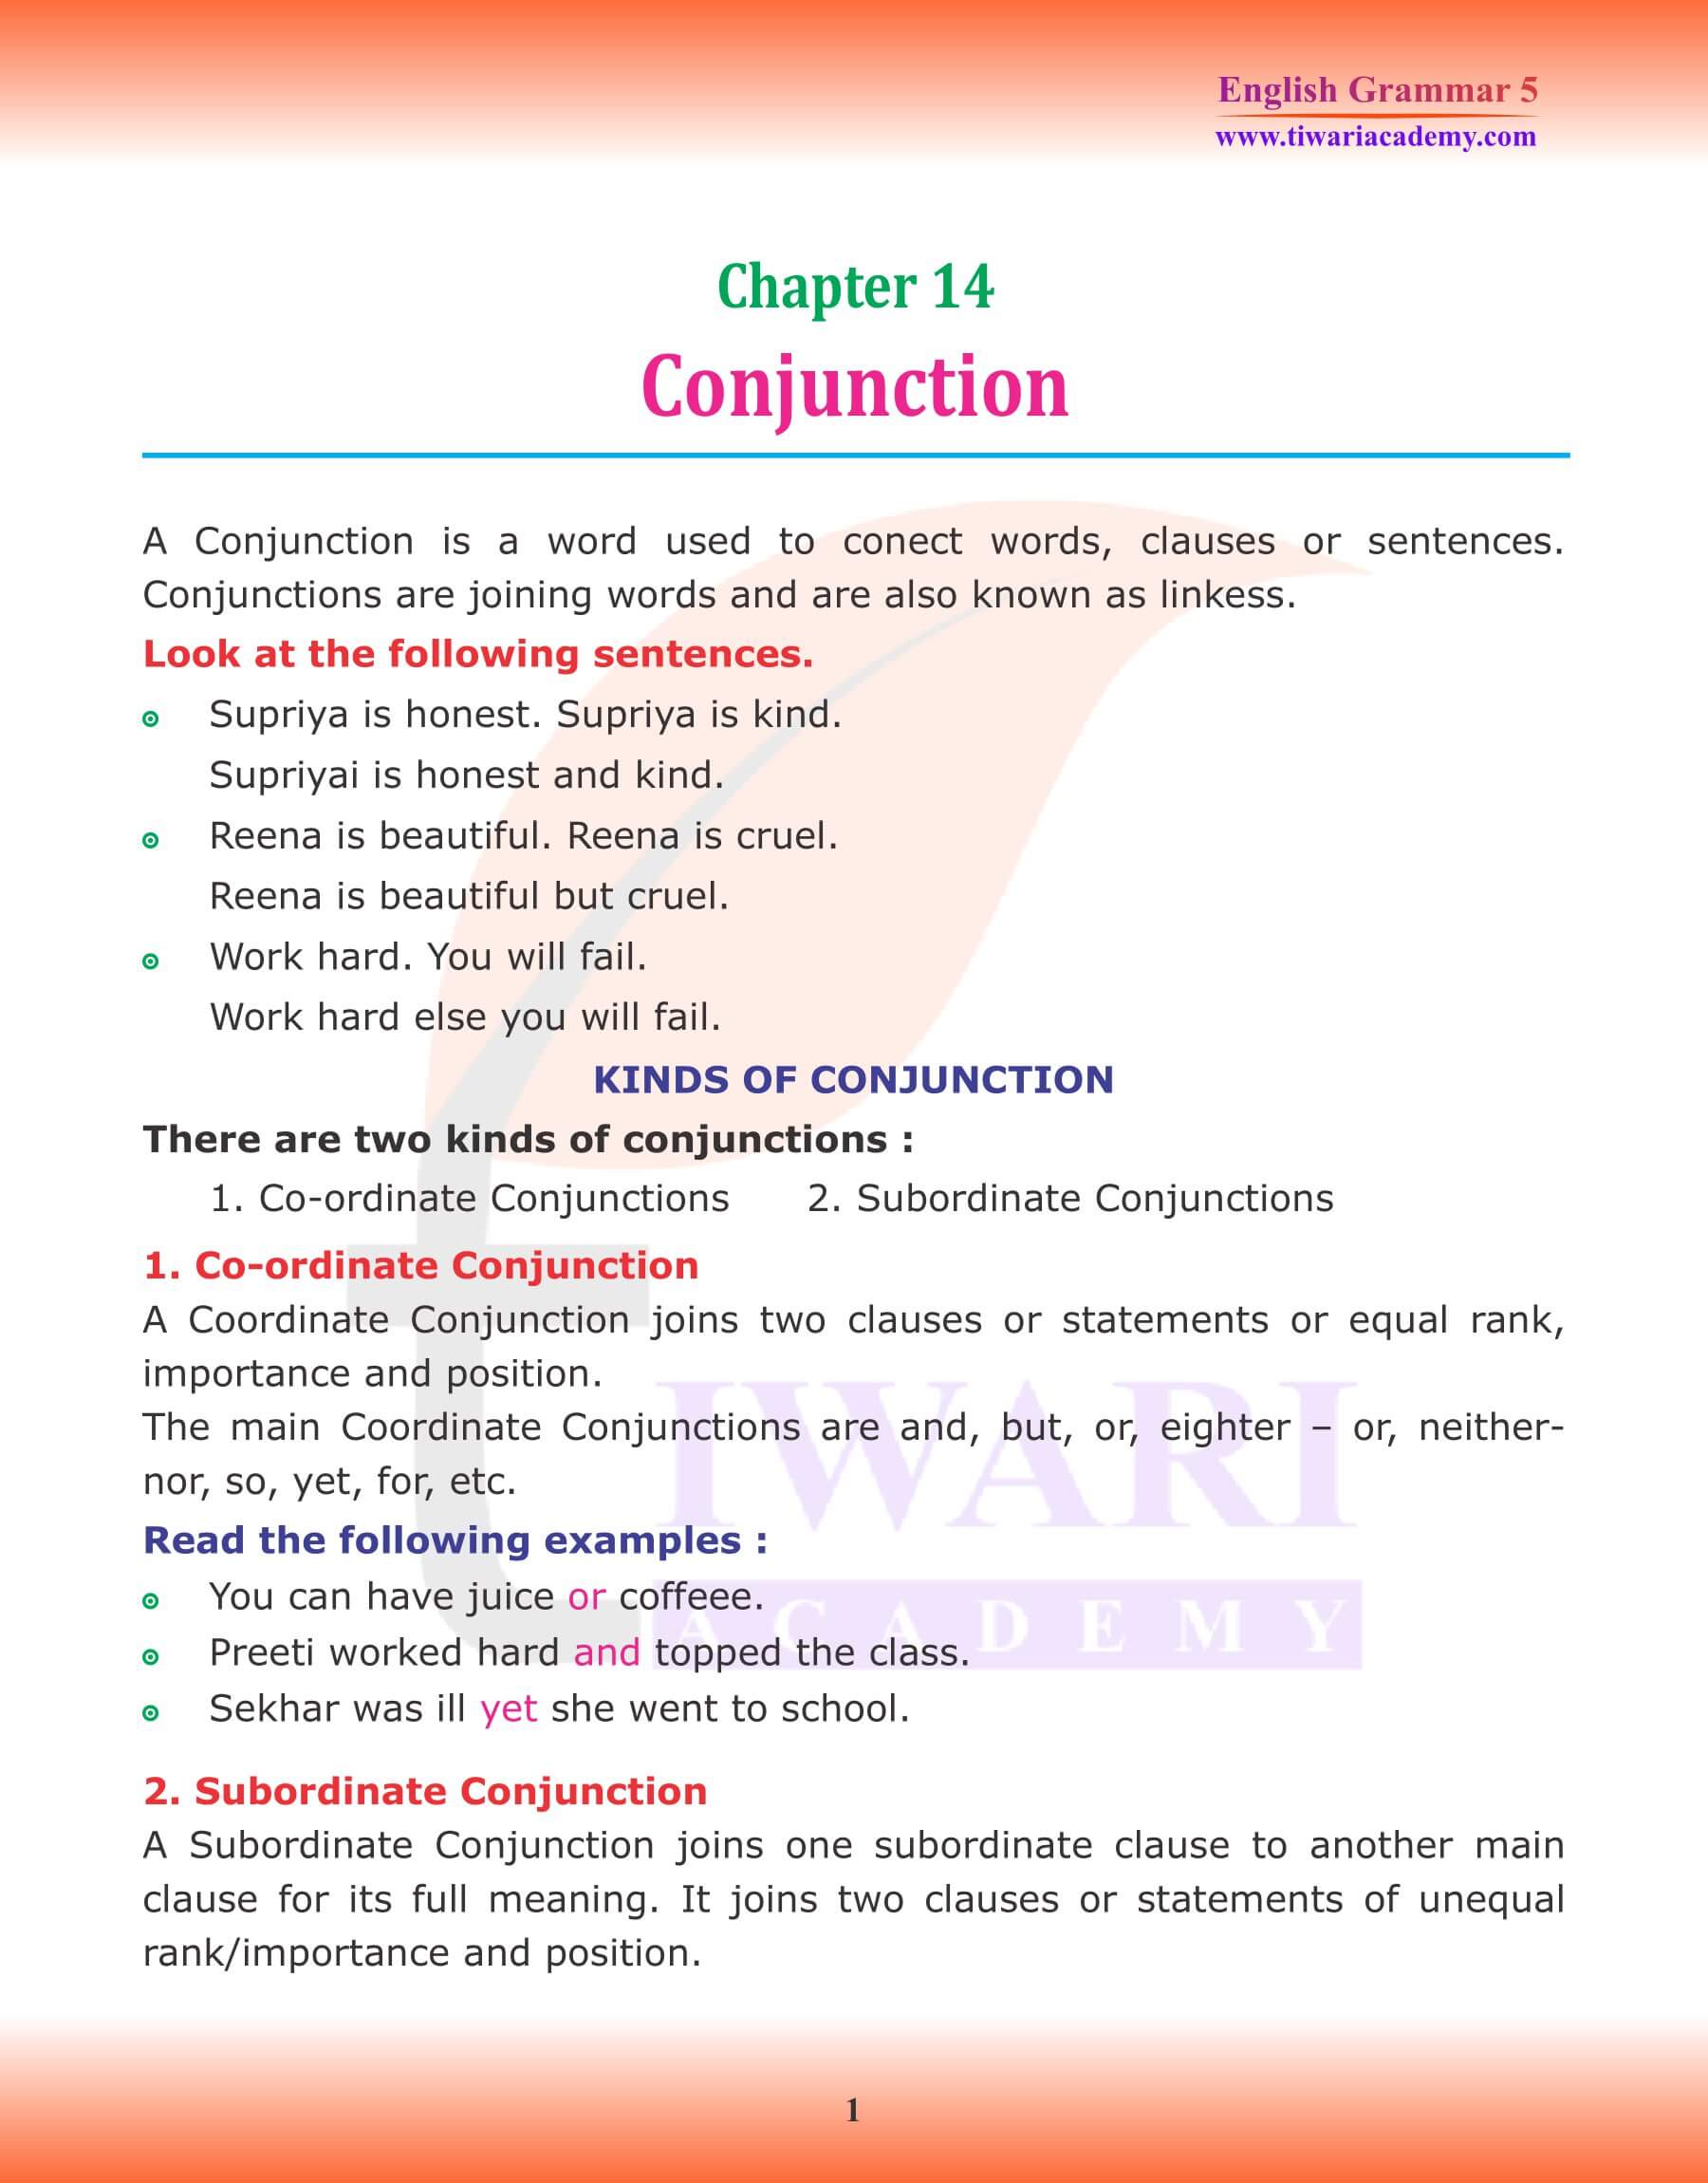 Class 5 Grammar Chapter 14 Conjunctions